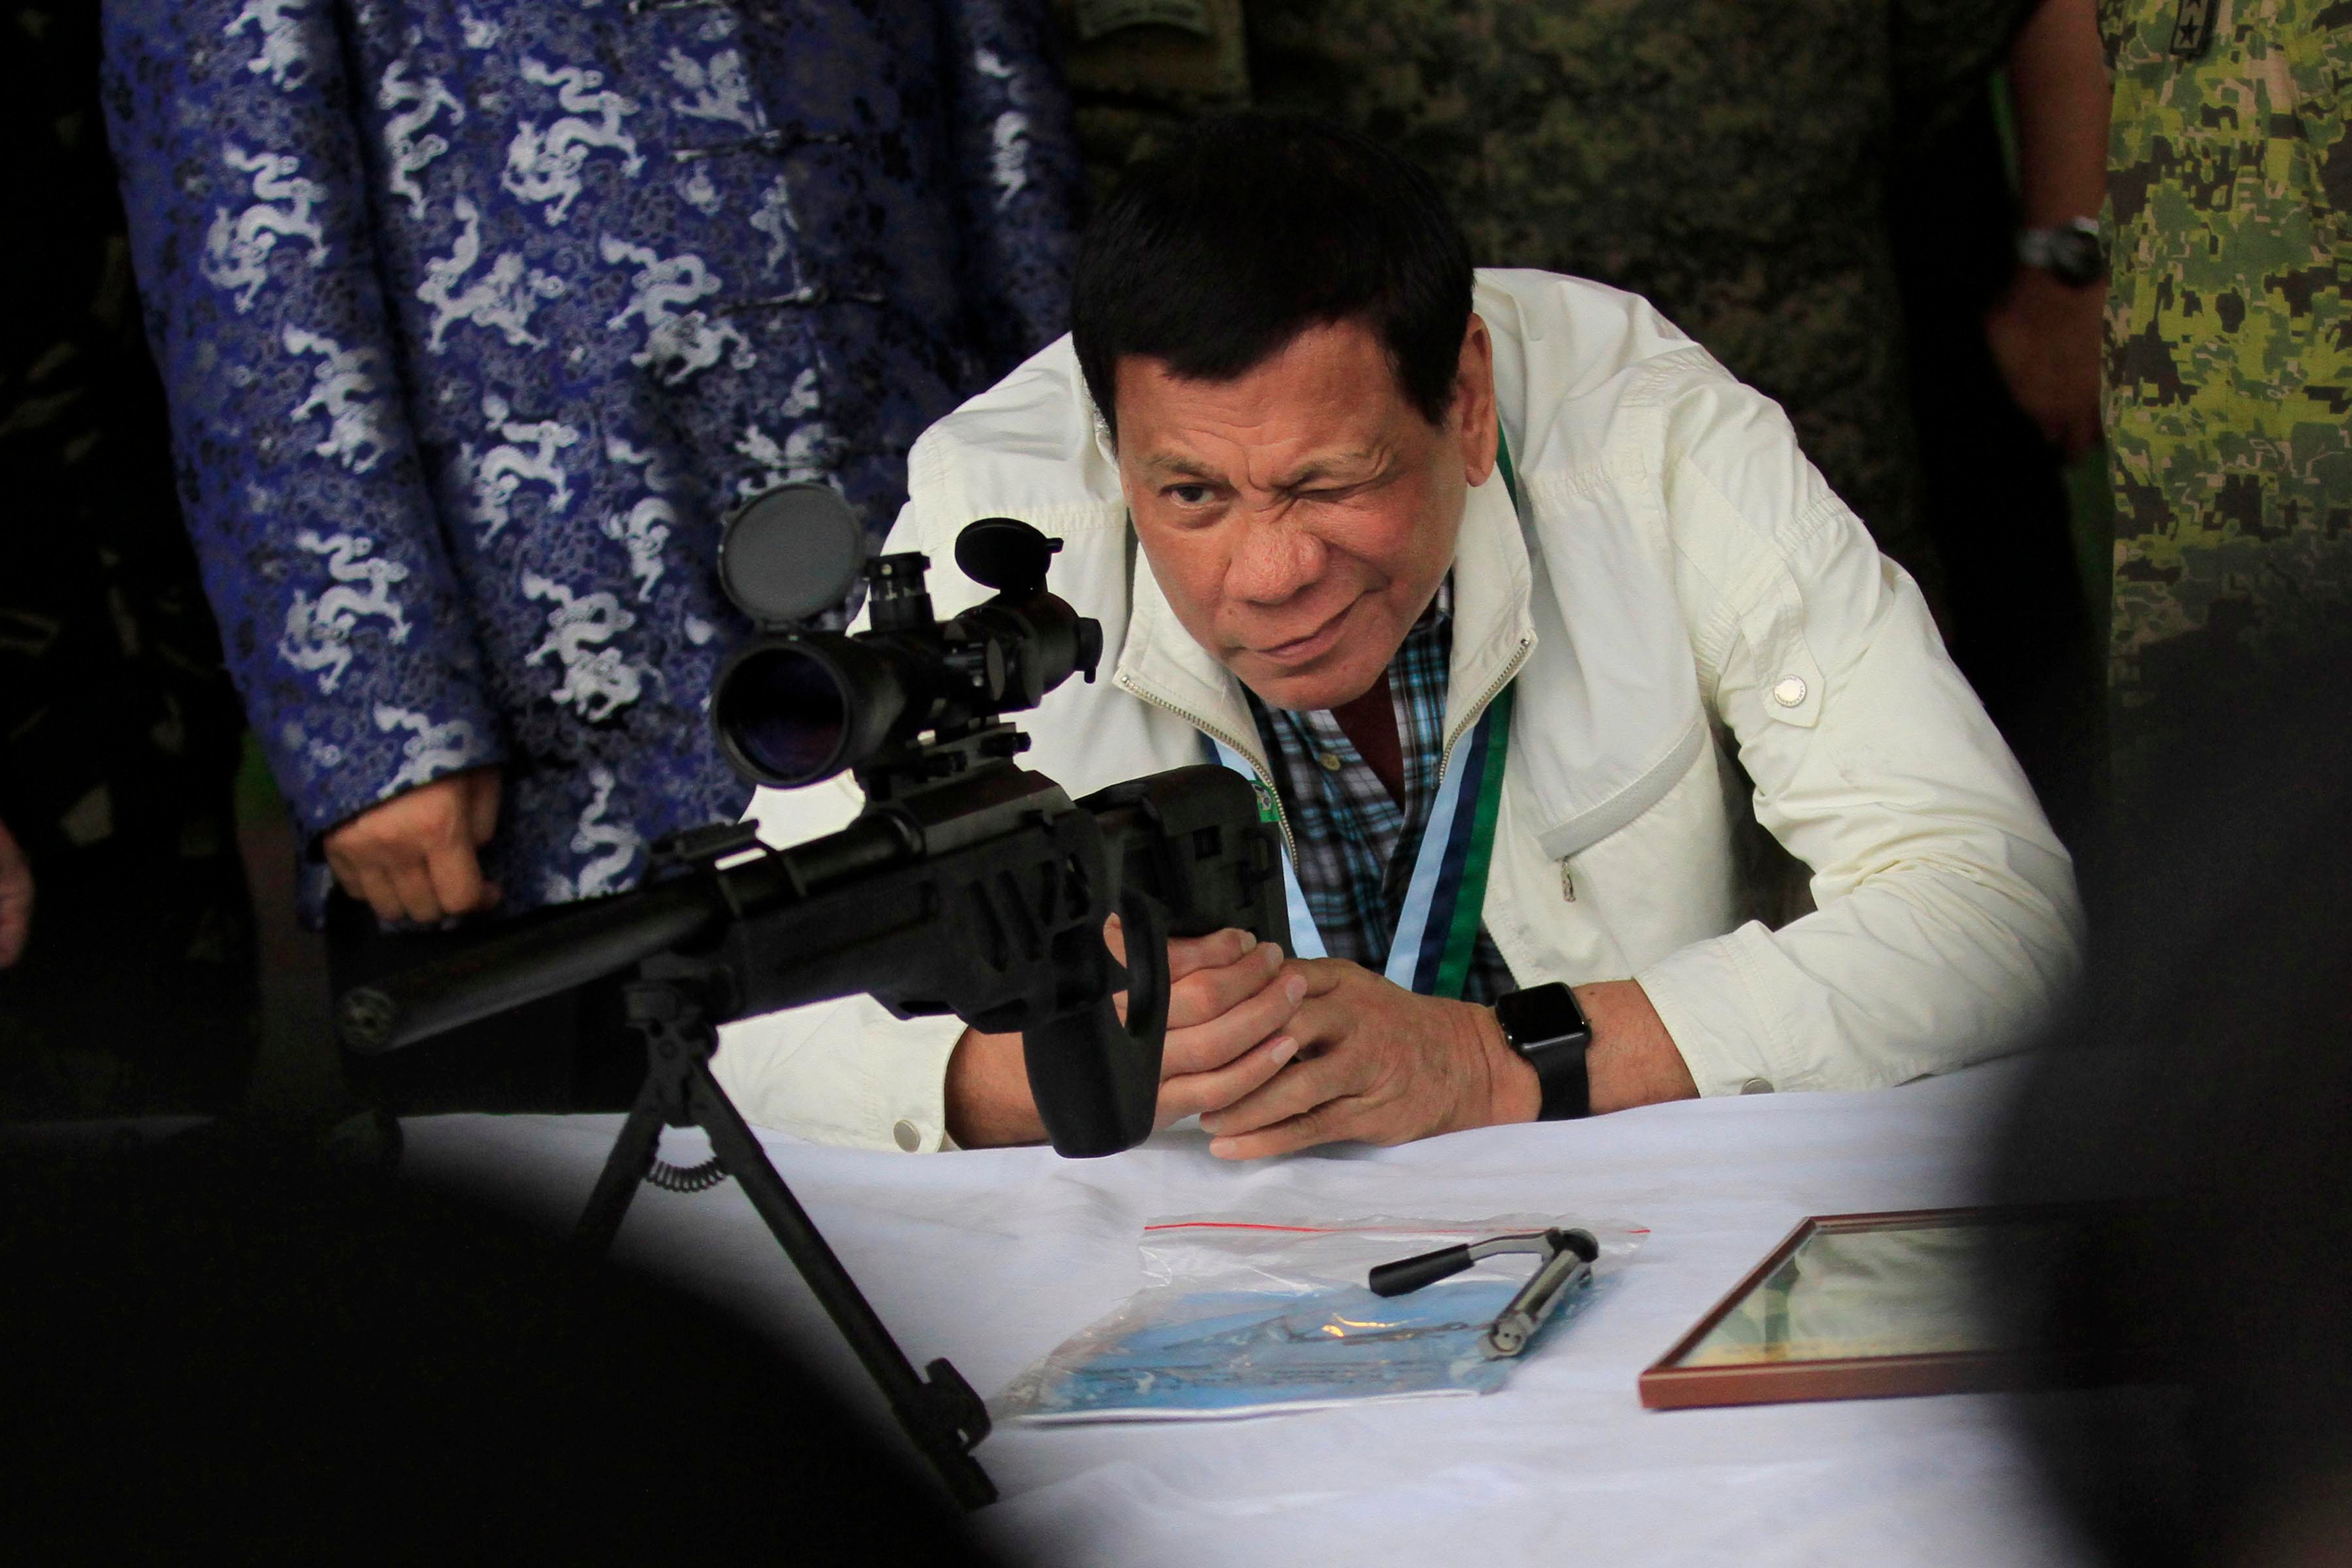 Lacson hits, PNP defends Duterte proposal to arm civilians